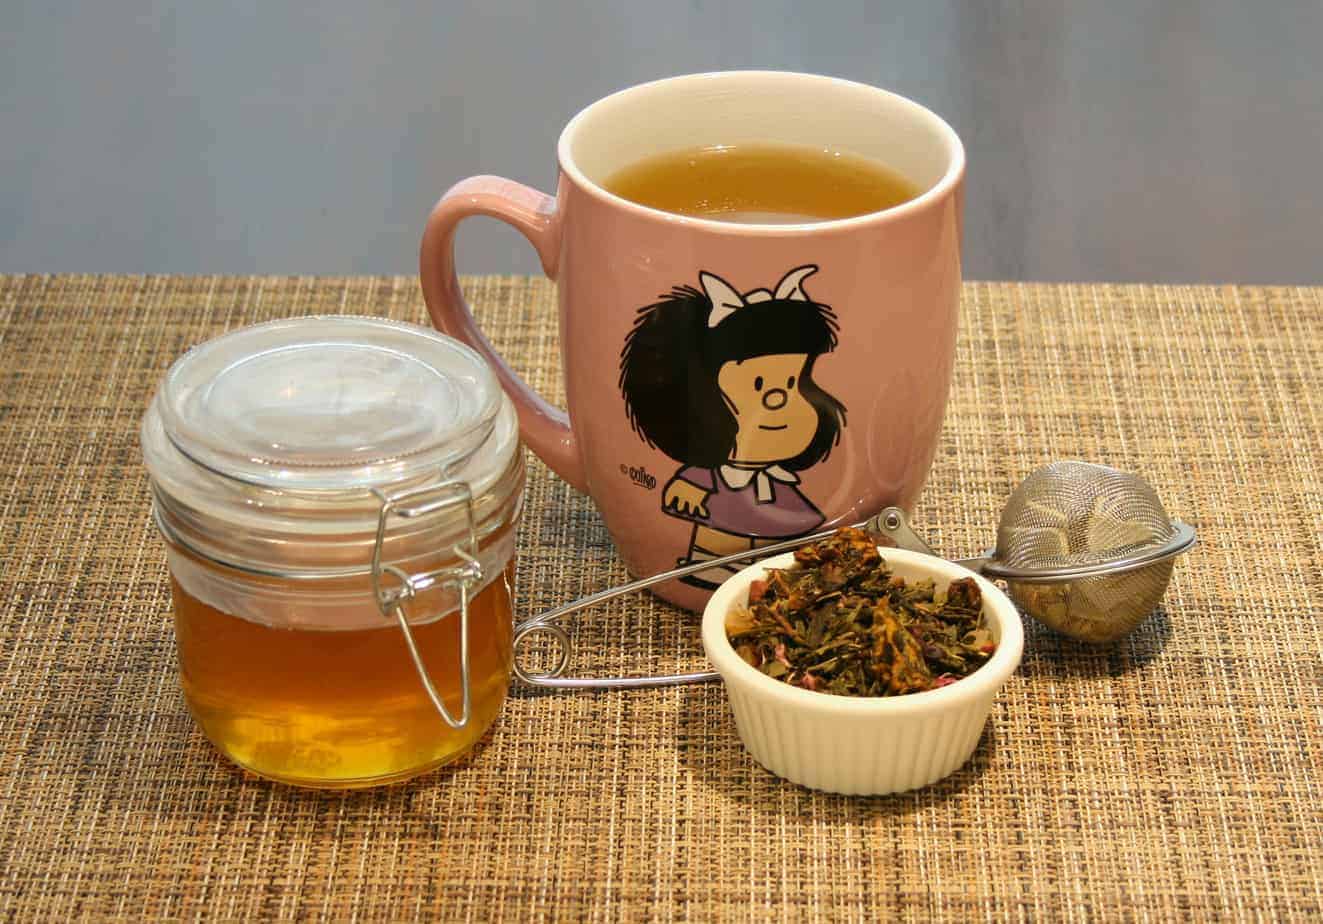 Tostado Coffee & Brunch on Instagram: NUEVA COLECCIÓN MAFALDA.🤩 ¡Nunca  dejes de ser niño! Consigue estas 2 tazas con alcancía coleccionables de  Mafalda en cualquiera de nuestras 2 sucursales por solo $250